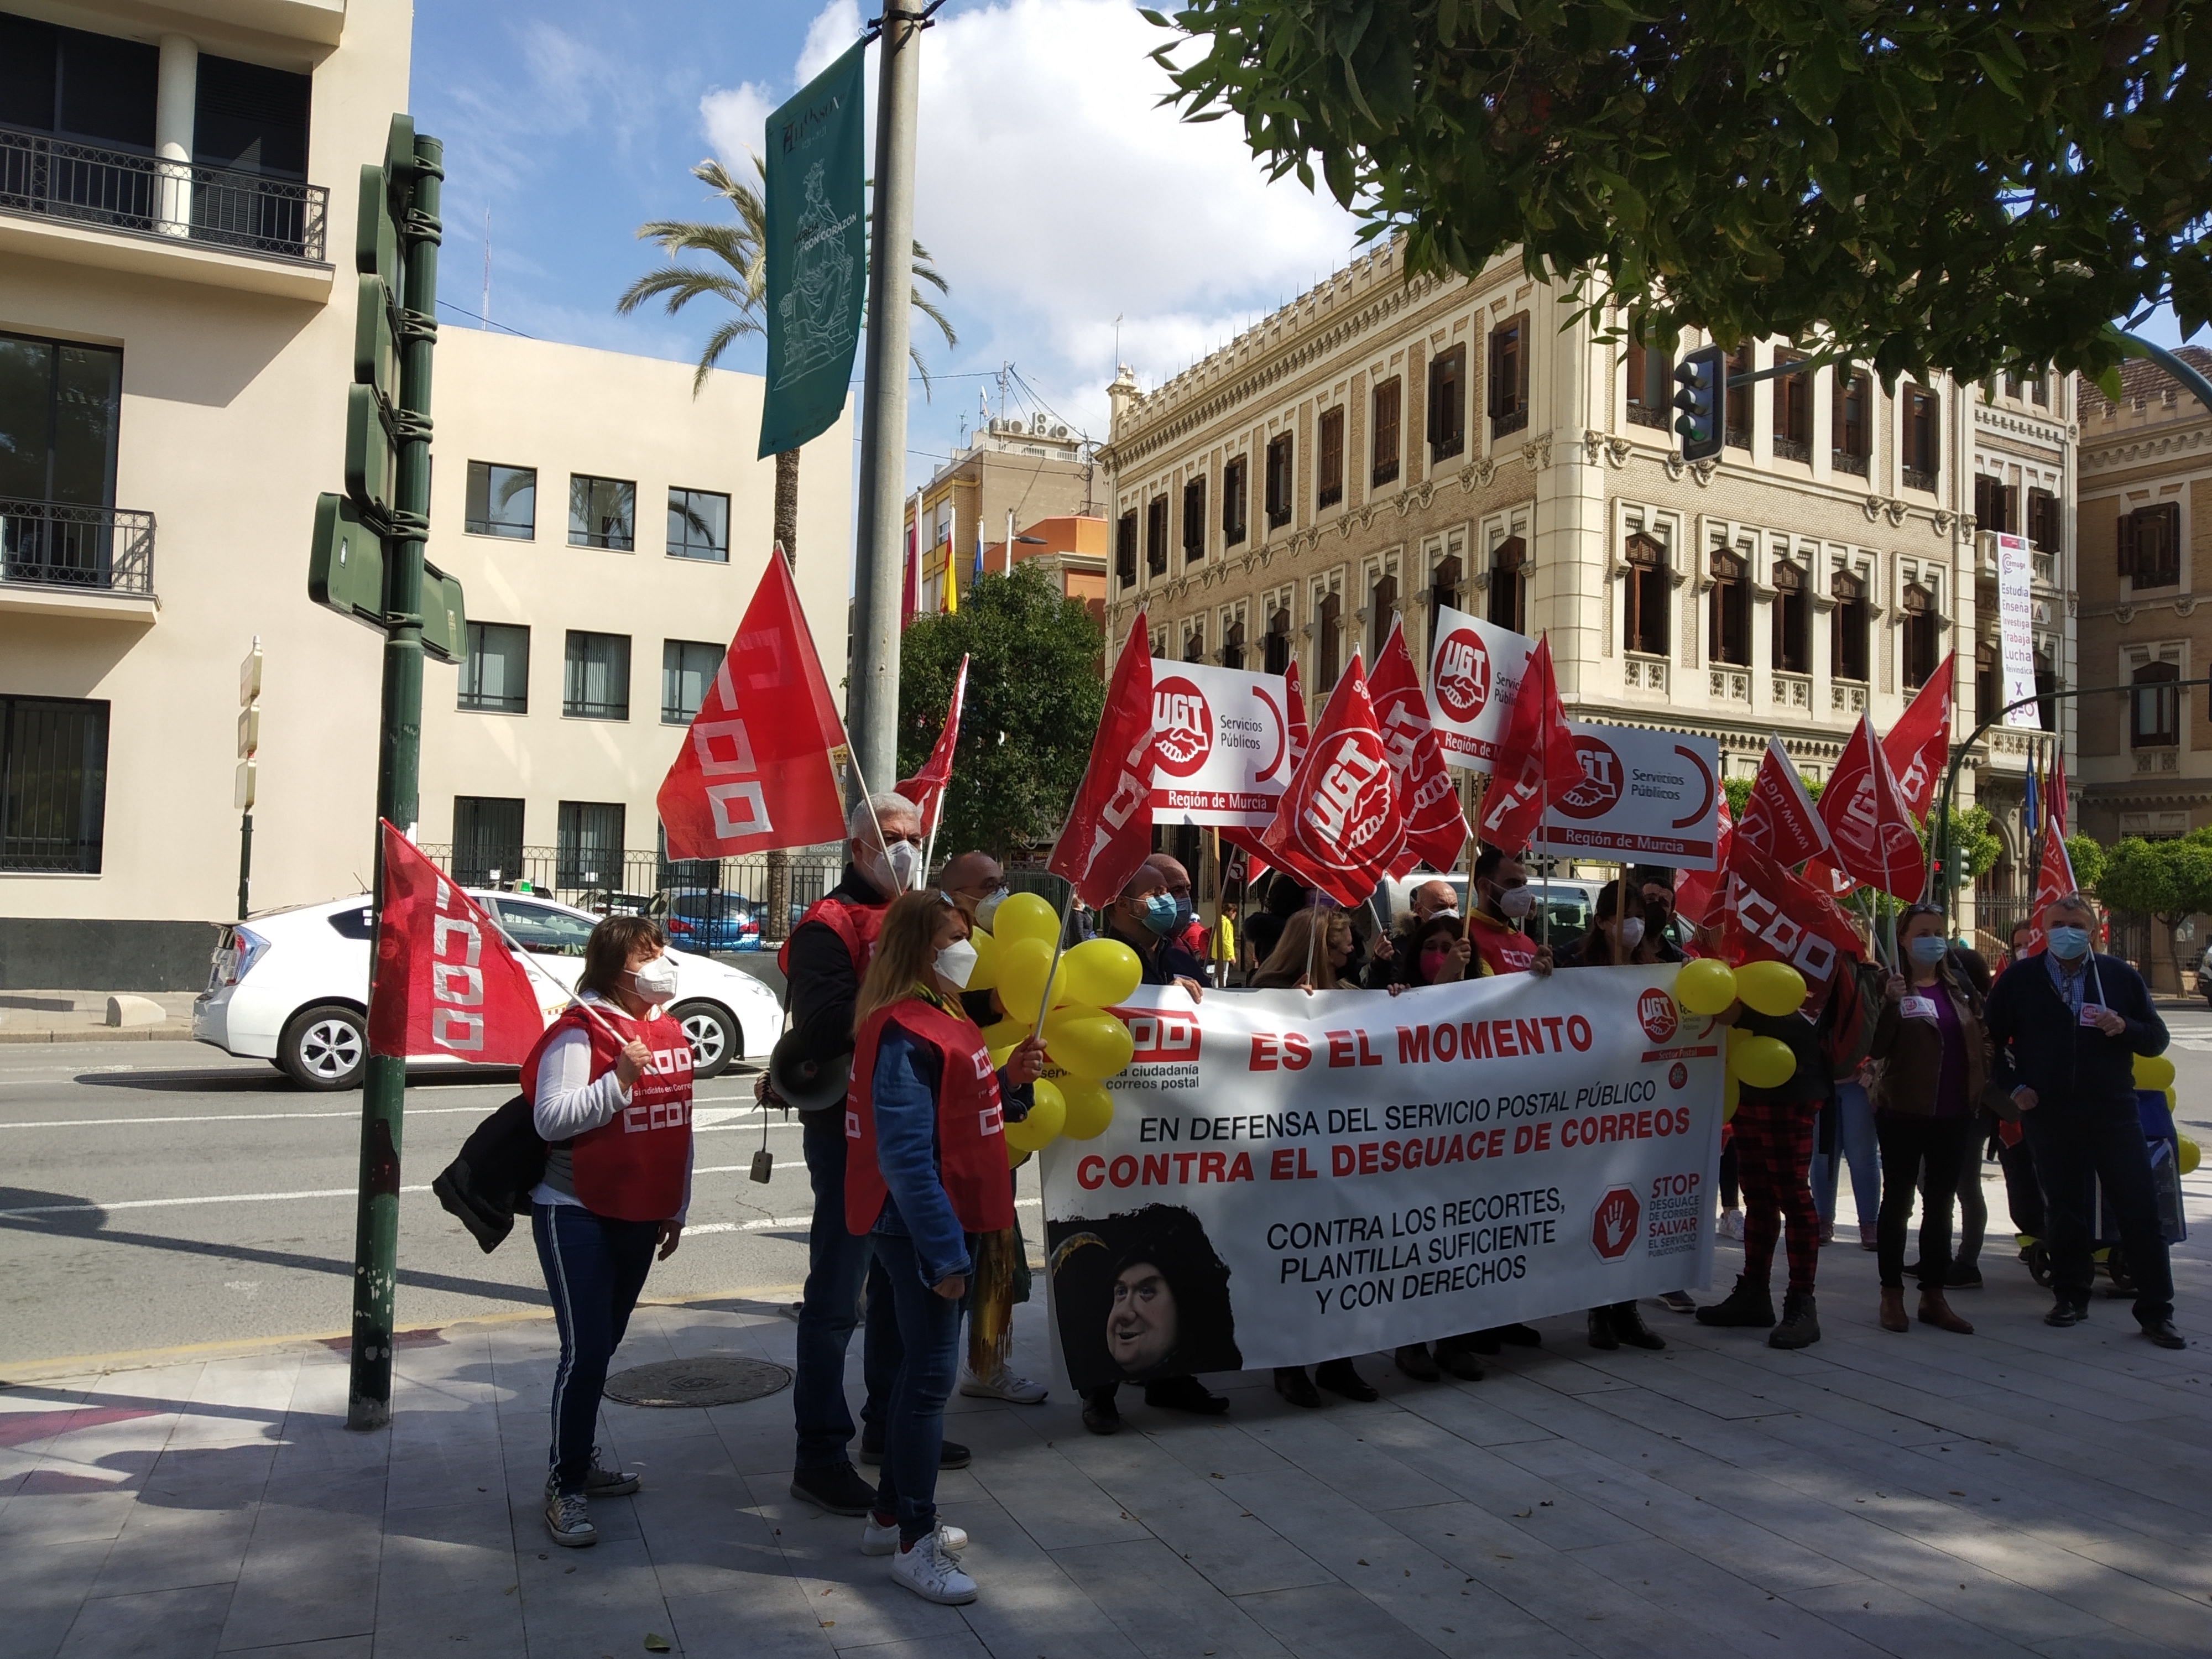 UGT y CCOO se movilizan en Murcia con una concentración para hacer un llamamiento a la sociedad e instituciones en defensa del servicio postal público y contra el desmantelamiento de Correos